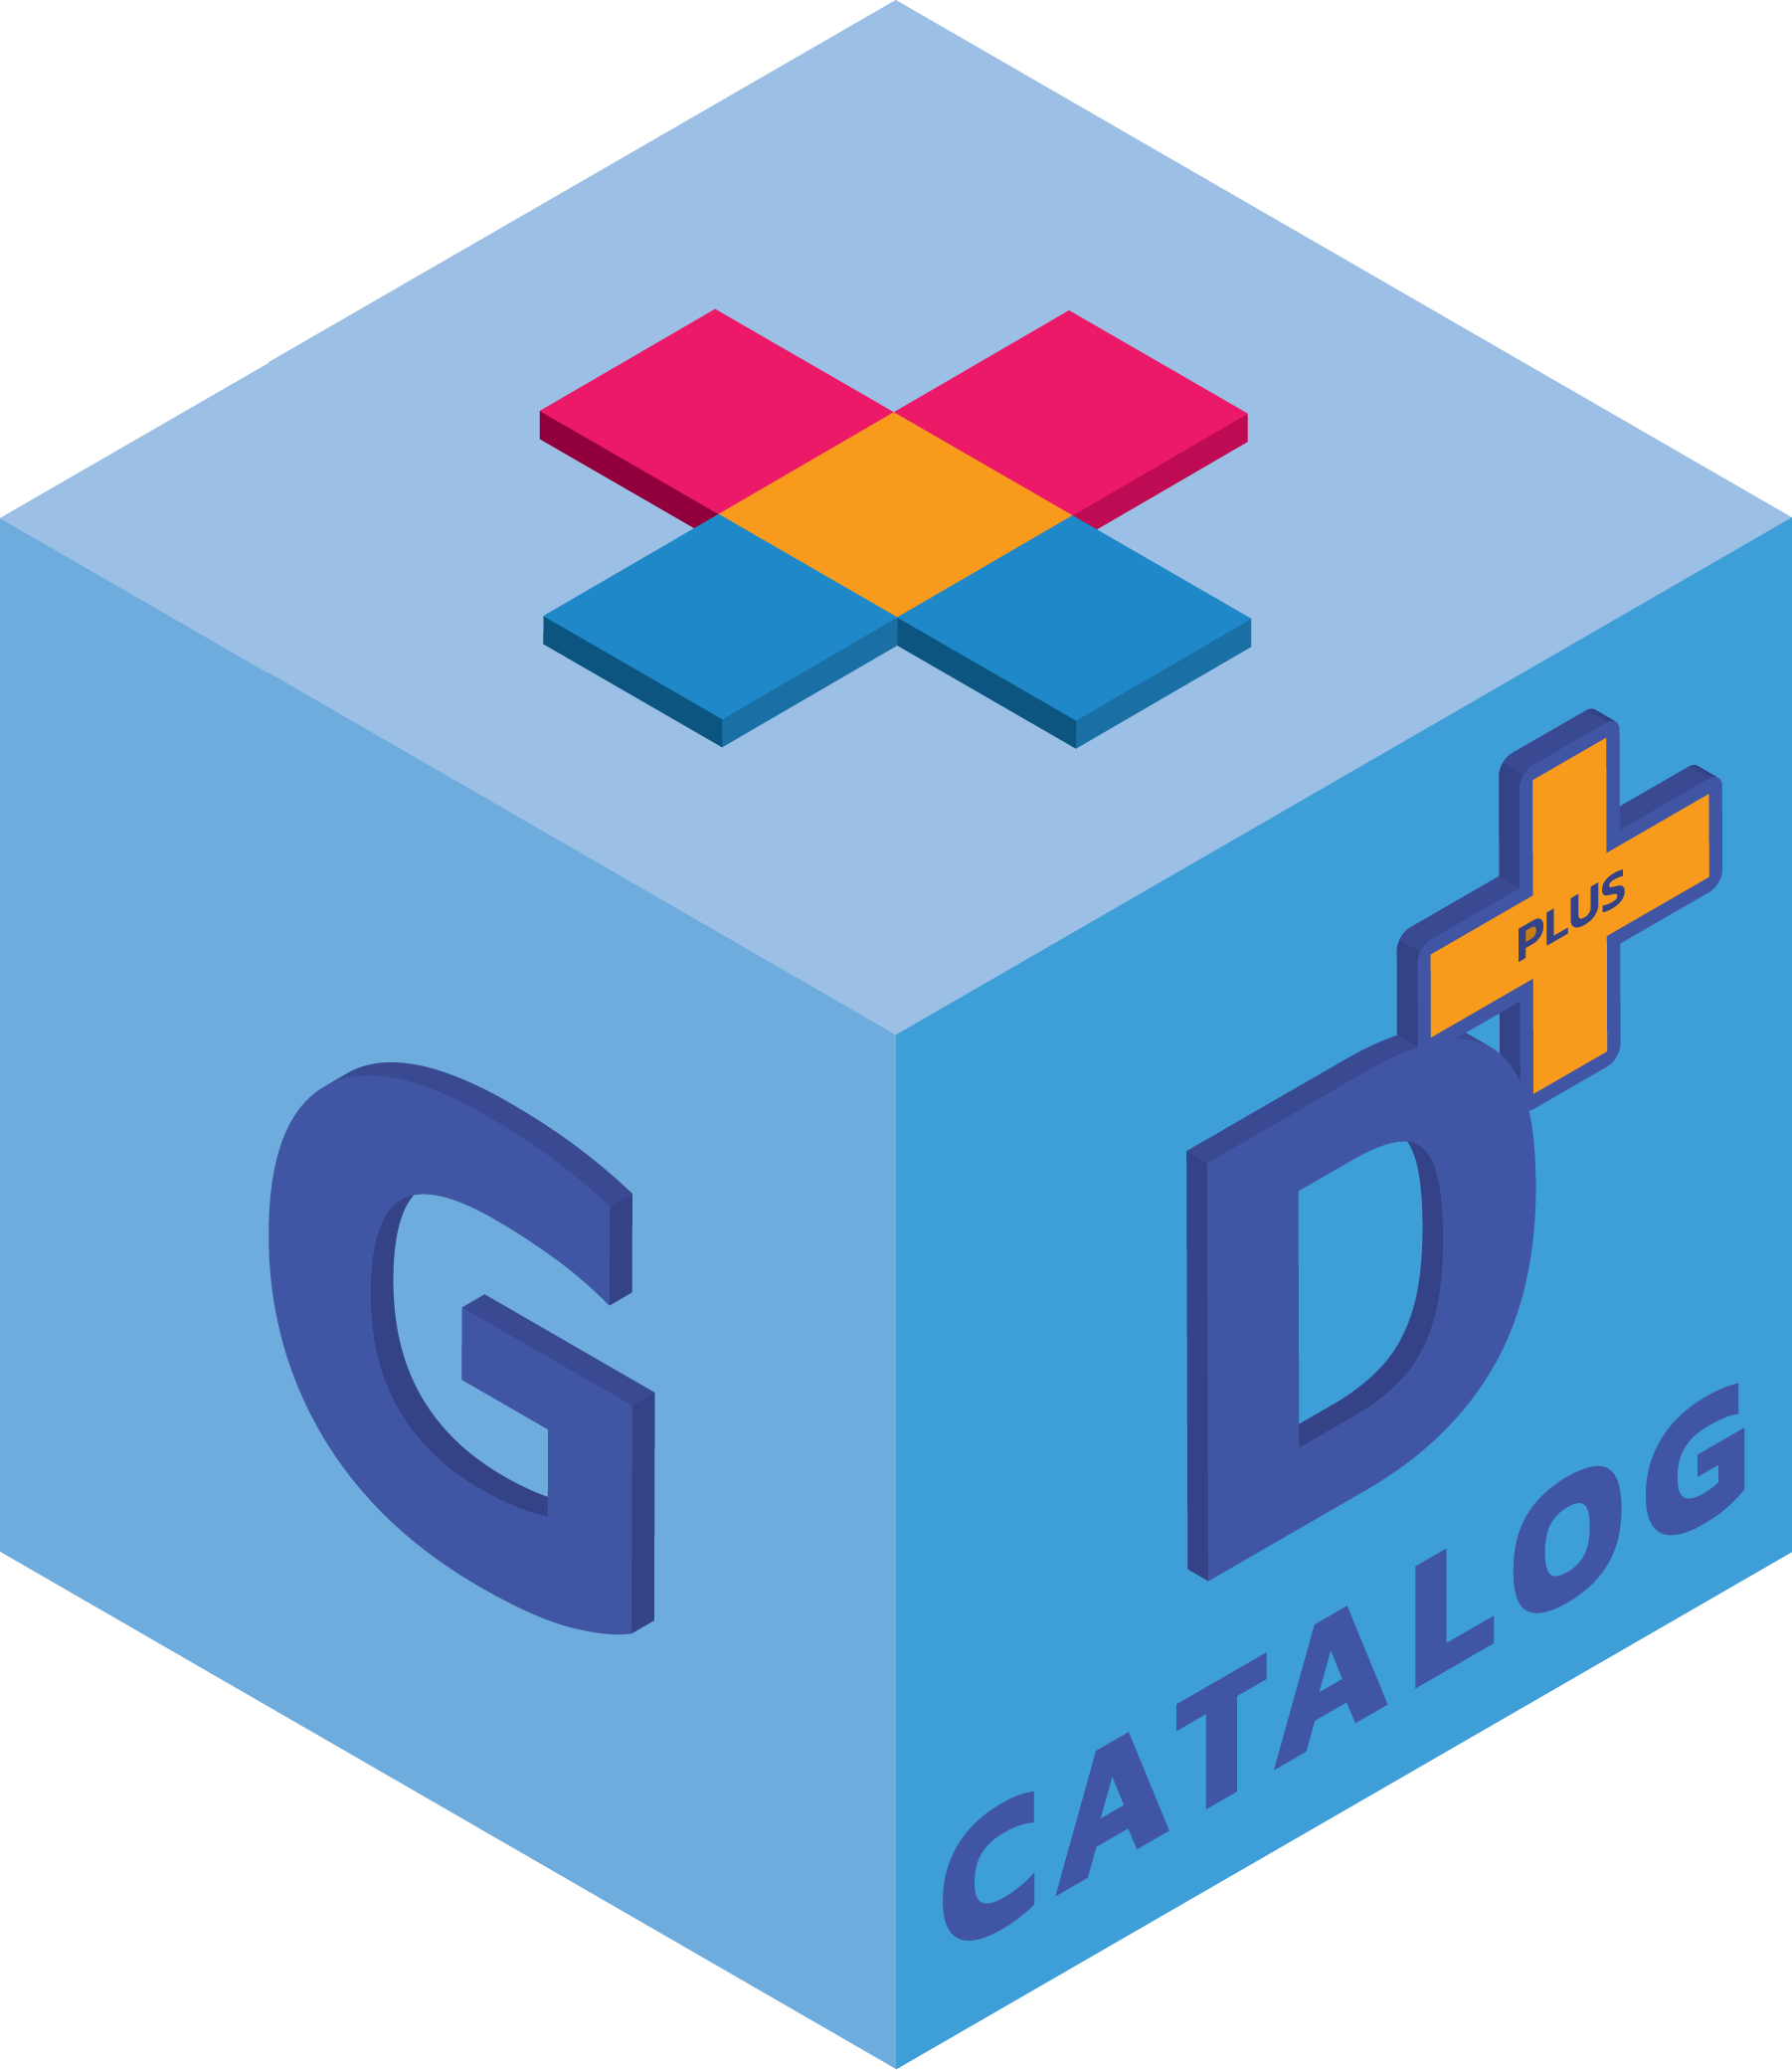 GDCatalog logo